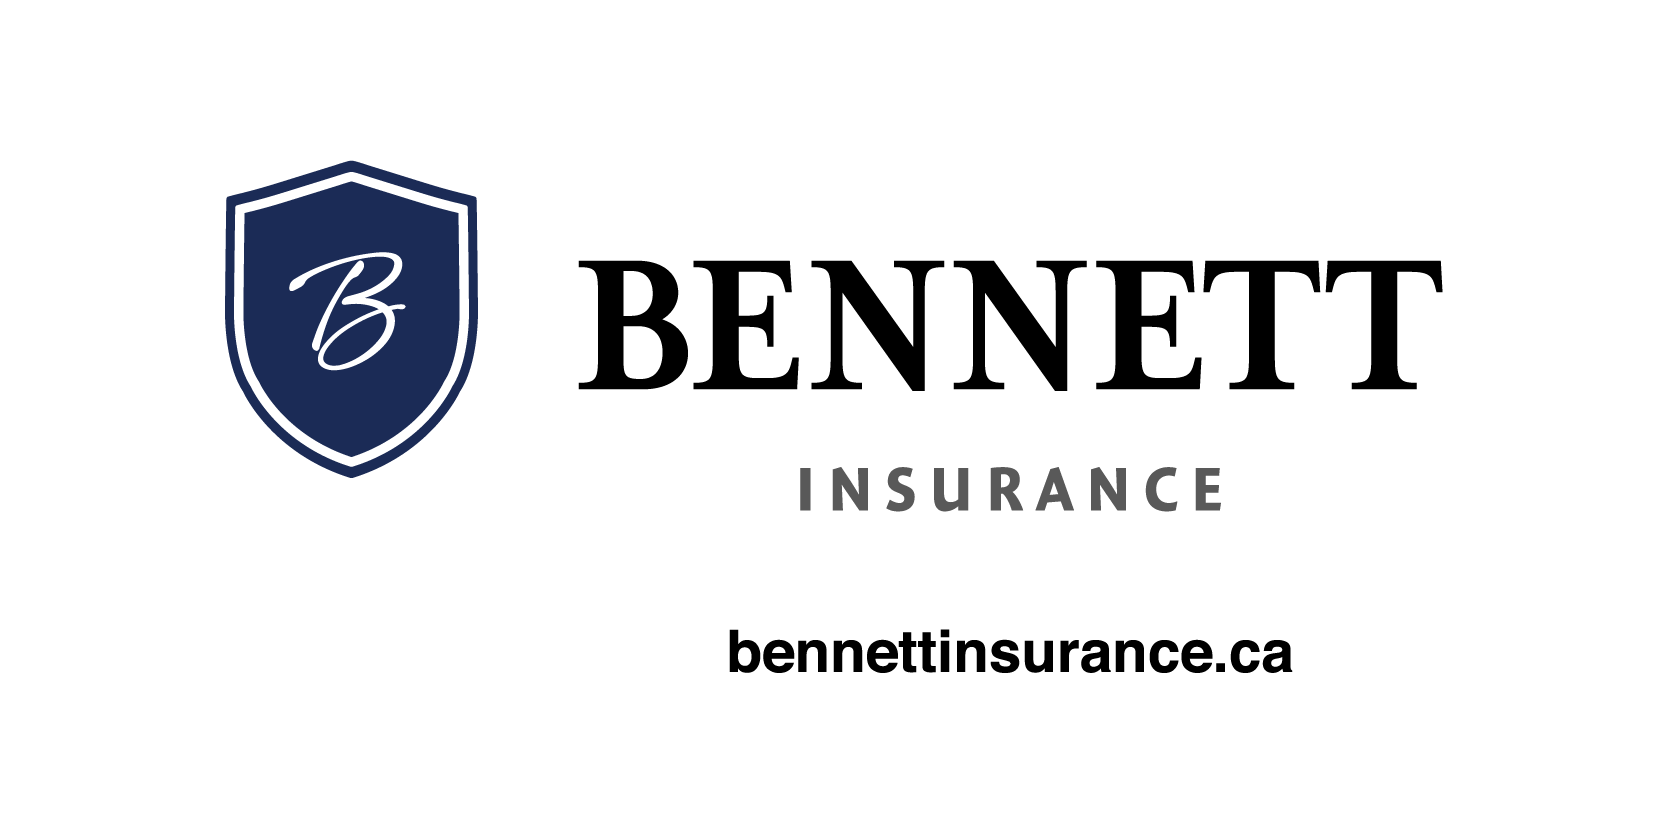 Bennett Insurance